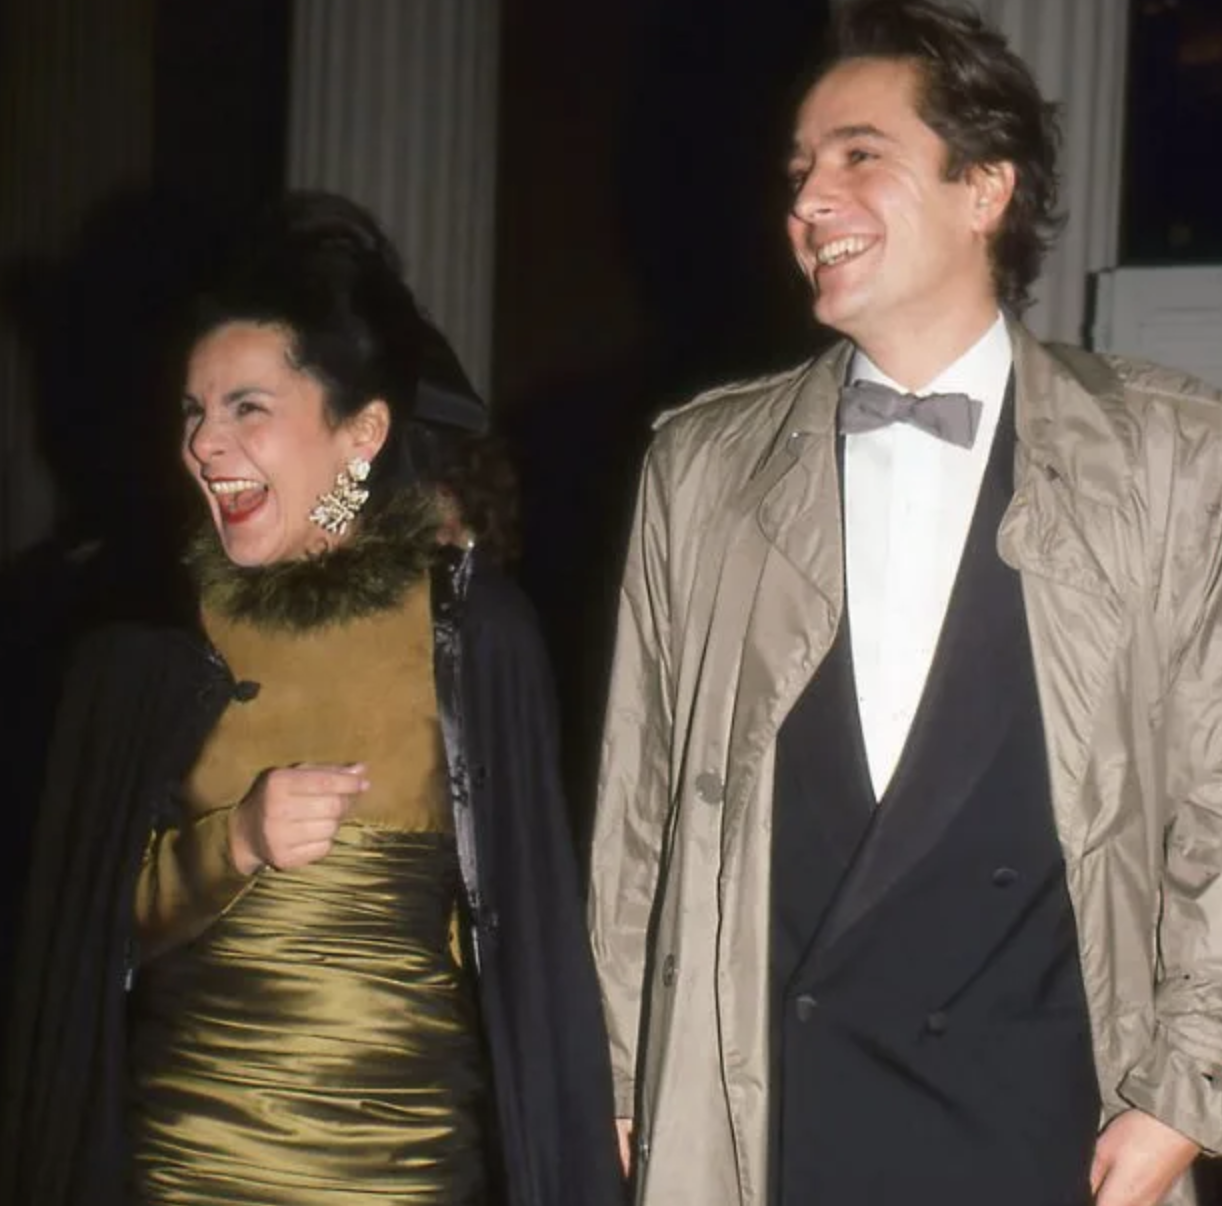 Dos personas sonriendo en evento, una mujer con vestido dorado y chaqueta negra, y hombre en esmoquin con pajarita